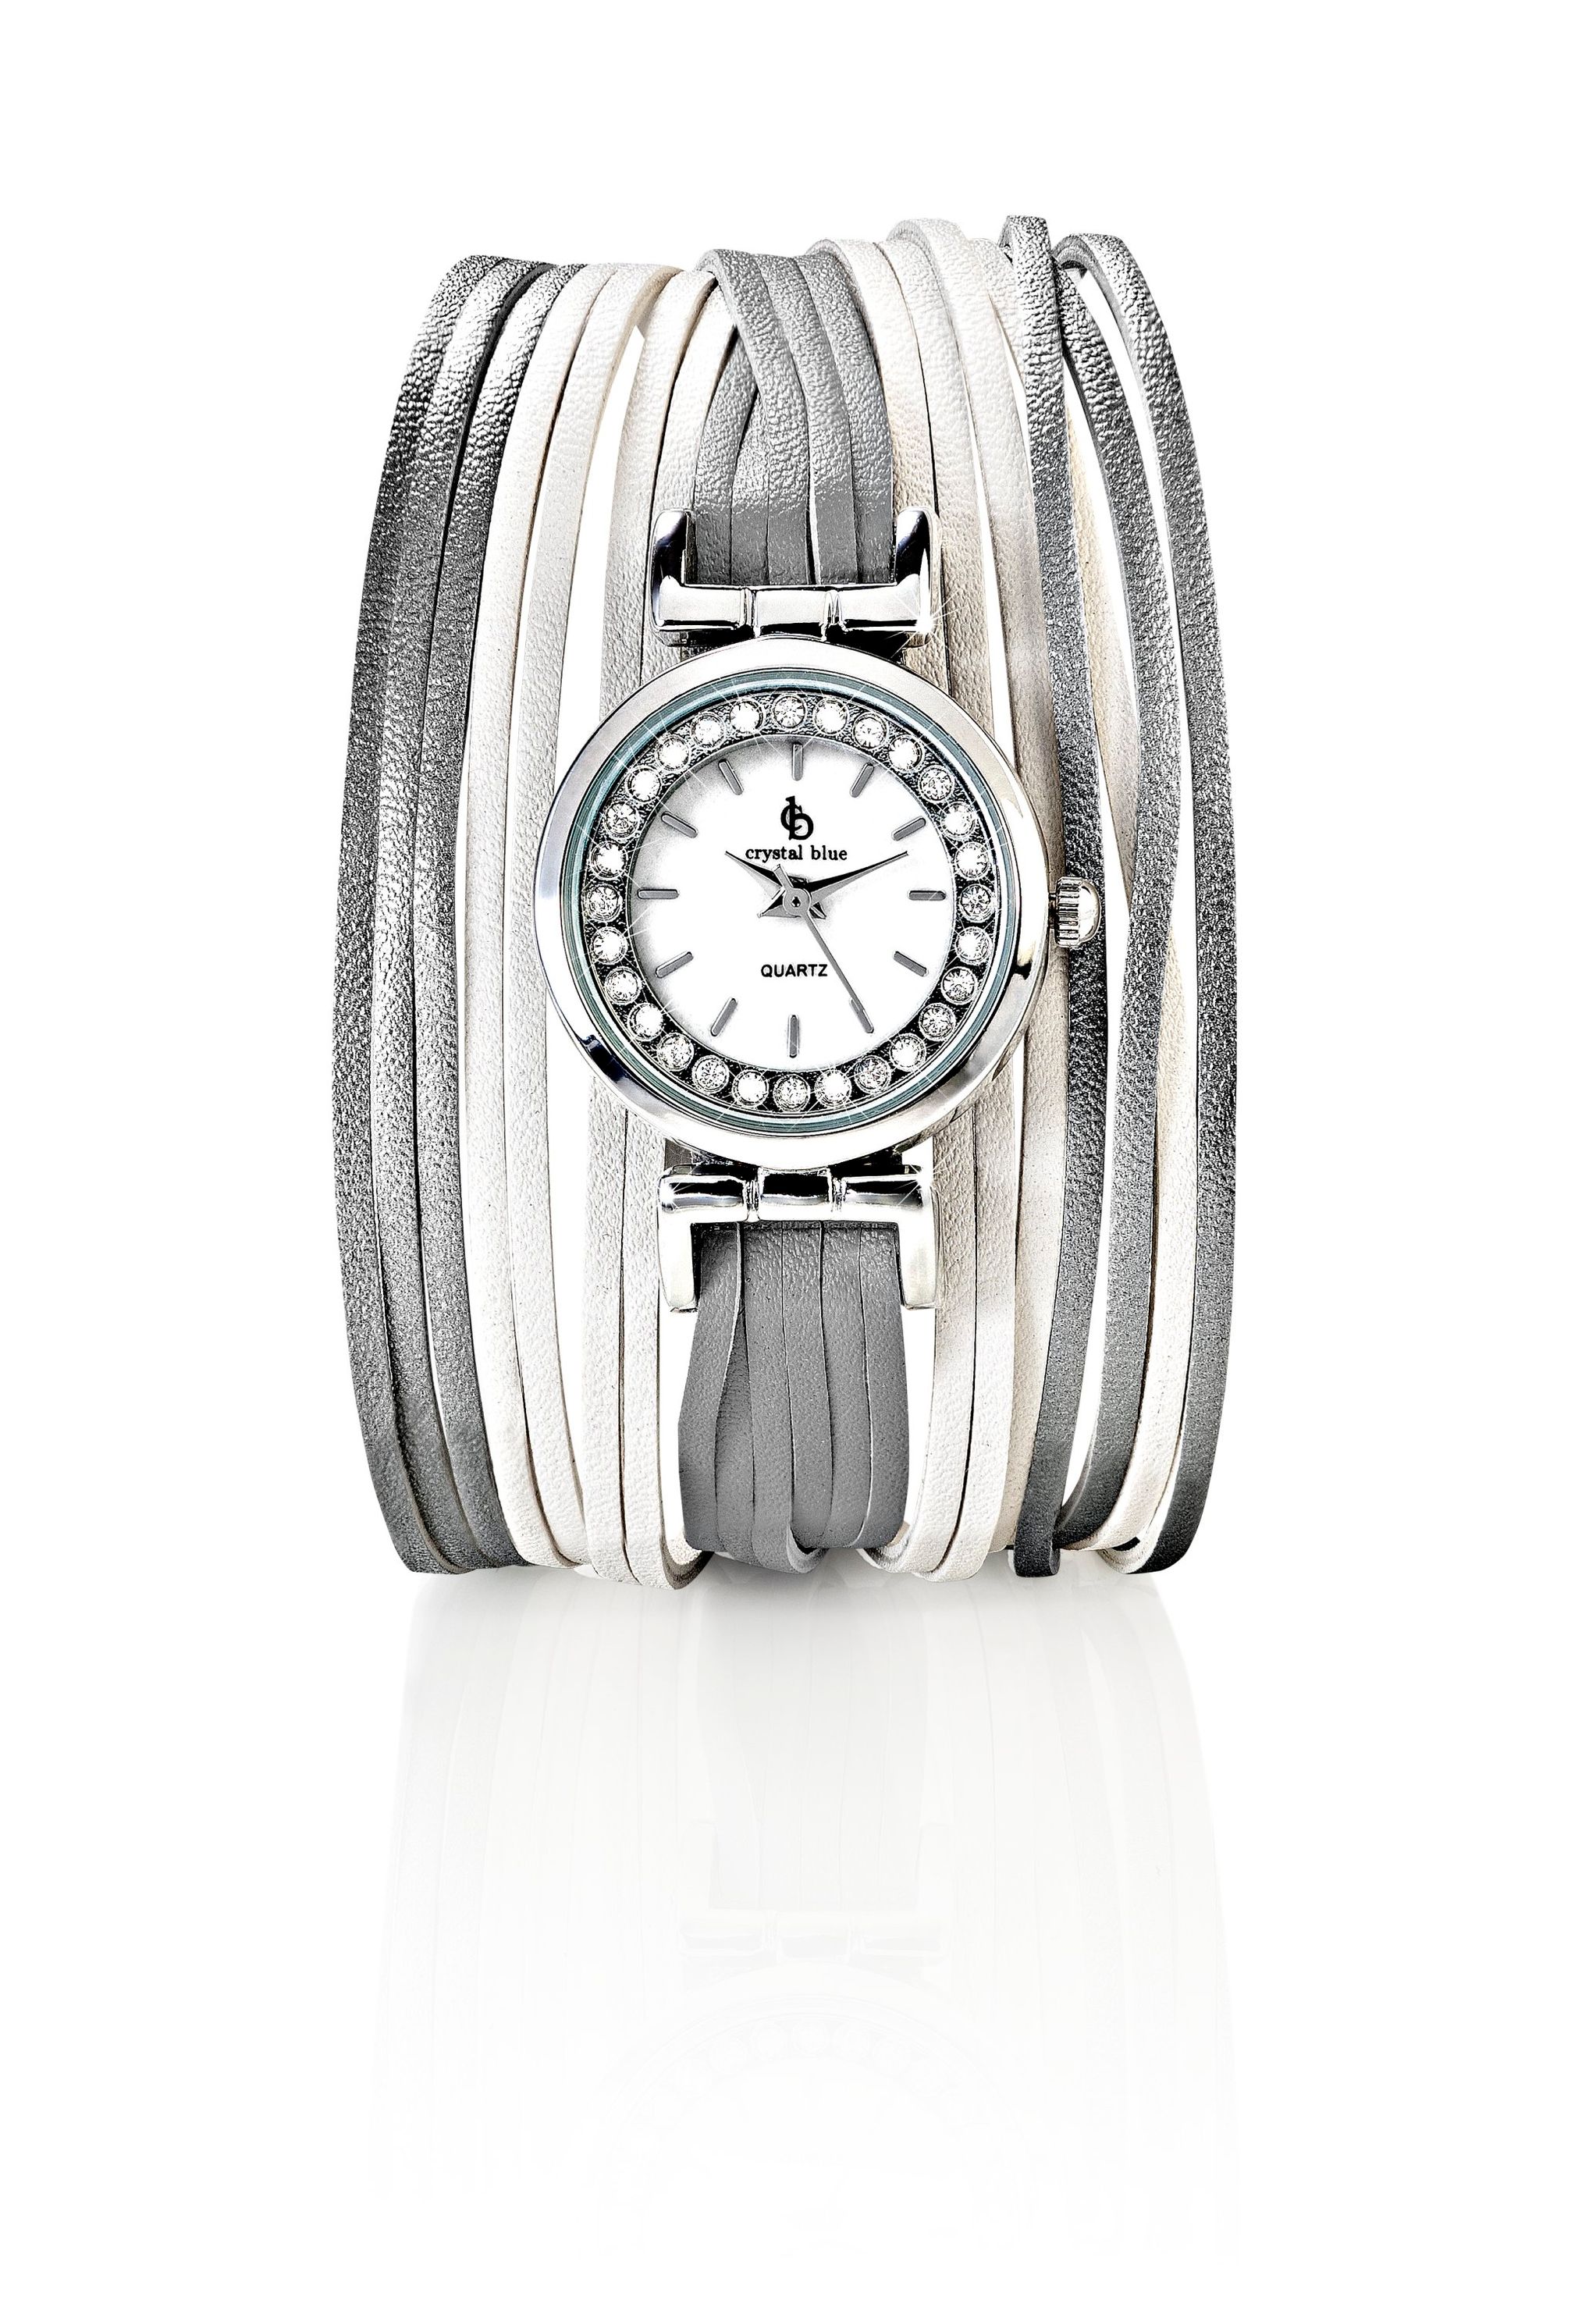 CB Armbanduhr Leona mit Magnetverschluss Farbe: weiß | Weltbild.at